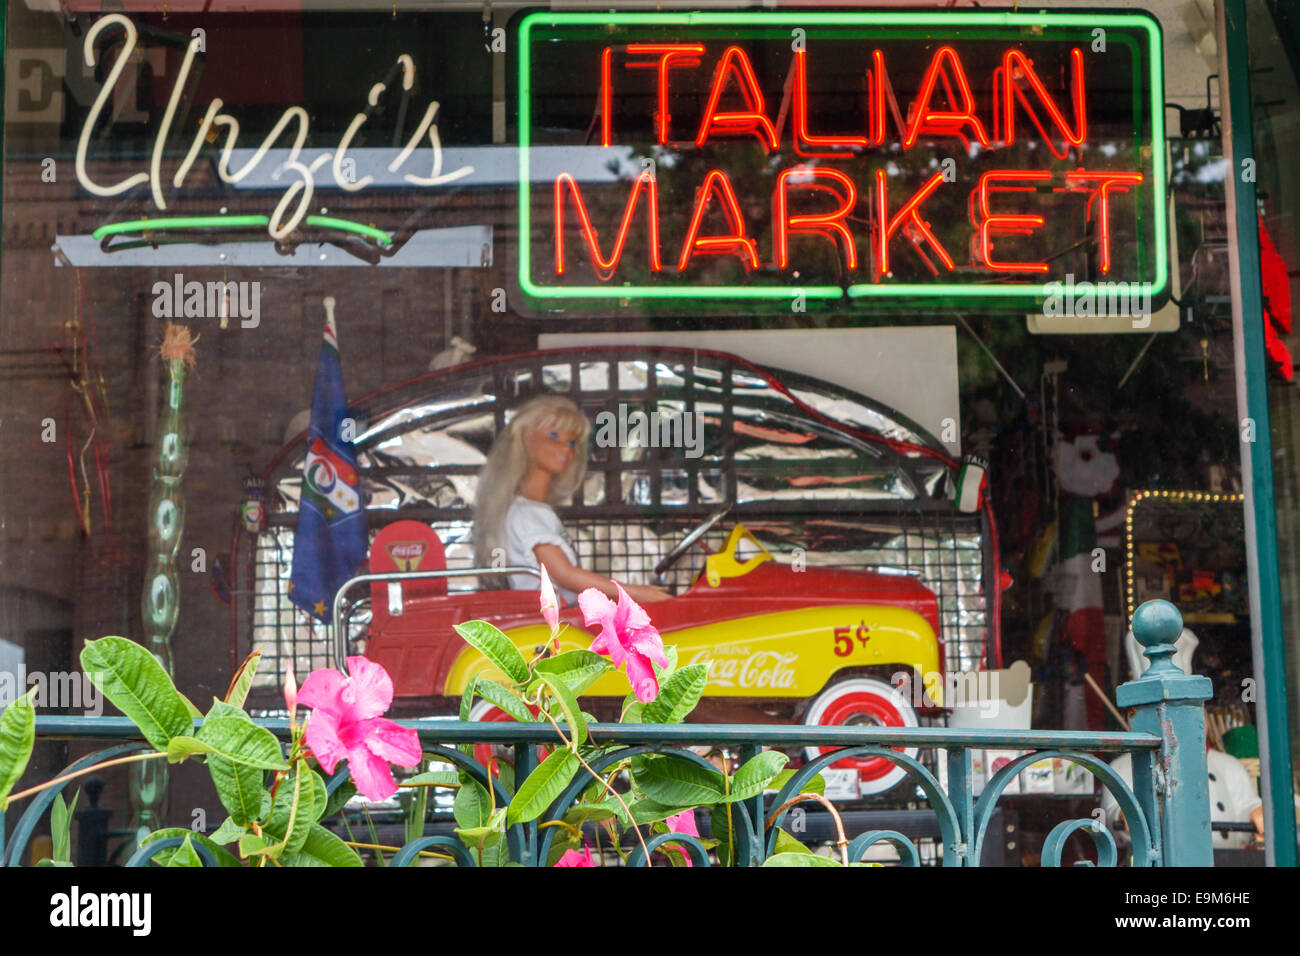 Saint St. Louis Missouri,The Hill,Italian ethnic neighborhood,Urzi's Italian Market,sign,neon sign,MO140901012 Stock Photo